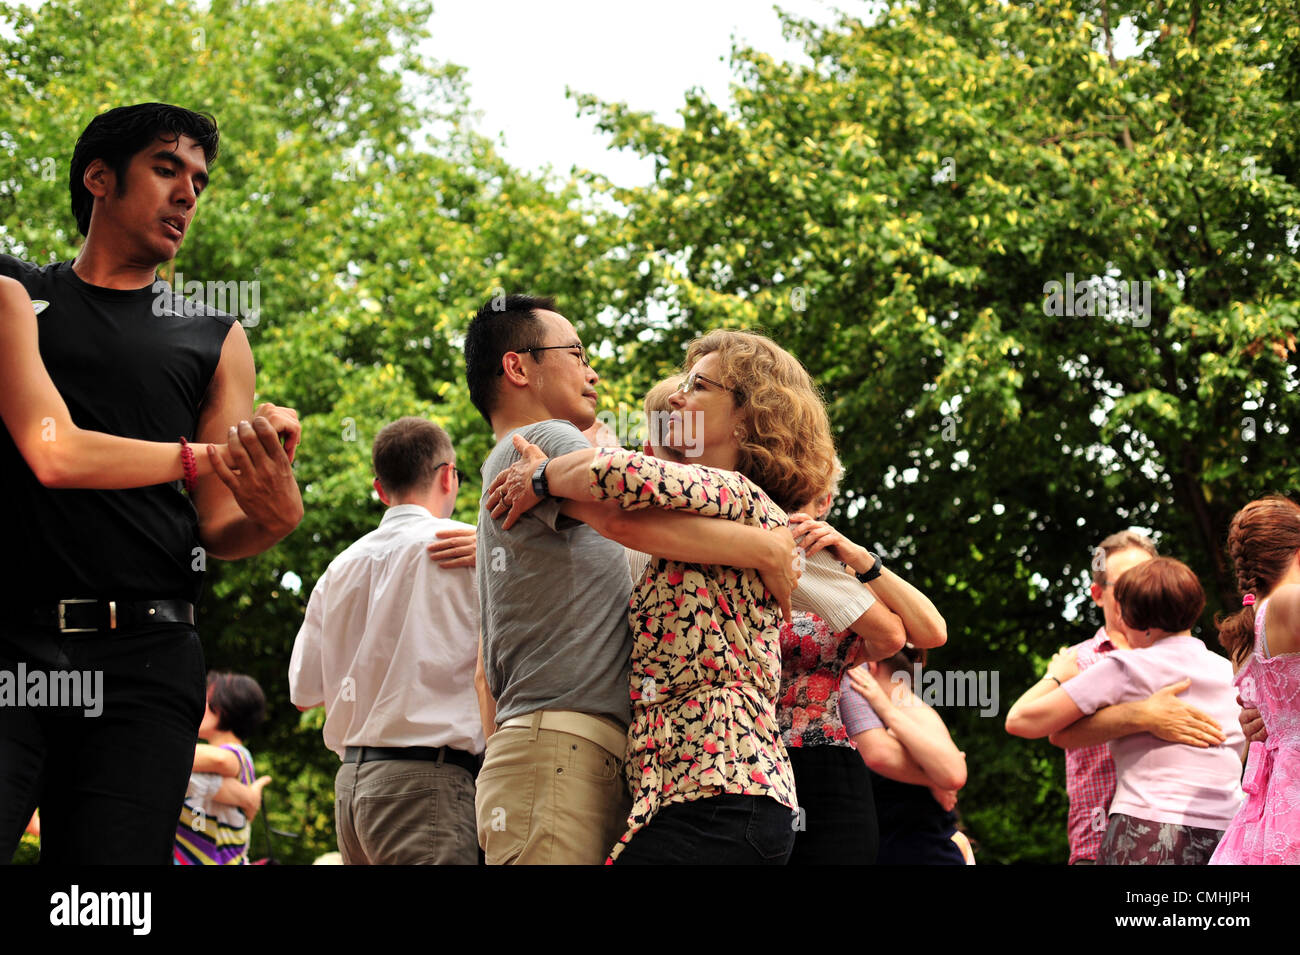 Les danseurs s'amusant à Regents Park ce weekend. Deux week-ends chaque année les passionnés de danse de salon (Samedi) et le Tango Argentin (dimanche) se réunissent pour danser sur le Broadwalk de Regents Park à l'aide d'arbres pour les parcs royaux. Organisé par Kele Baker qui a chorégraphié plusieurs Strictly Come Dancing tango routines, cette année c'est aussi le dernier week-end de les Jeux de 2012. Credit : Carole Edrich / Alamy Live News Banque D'Images